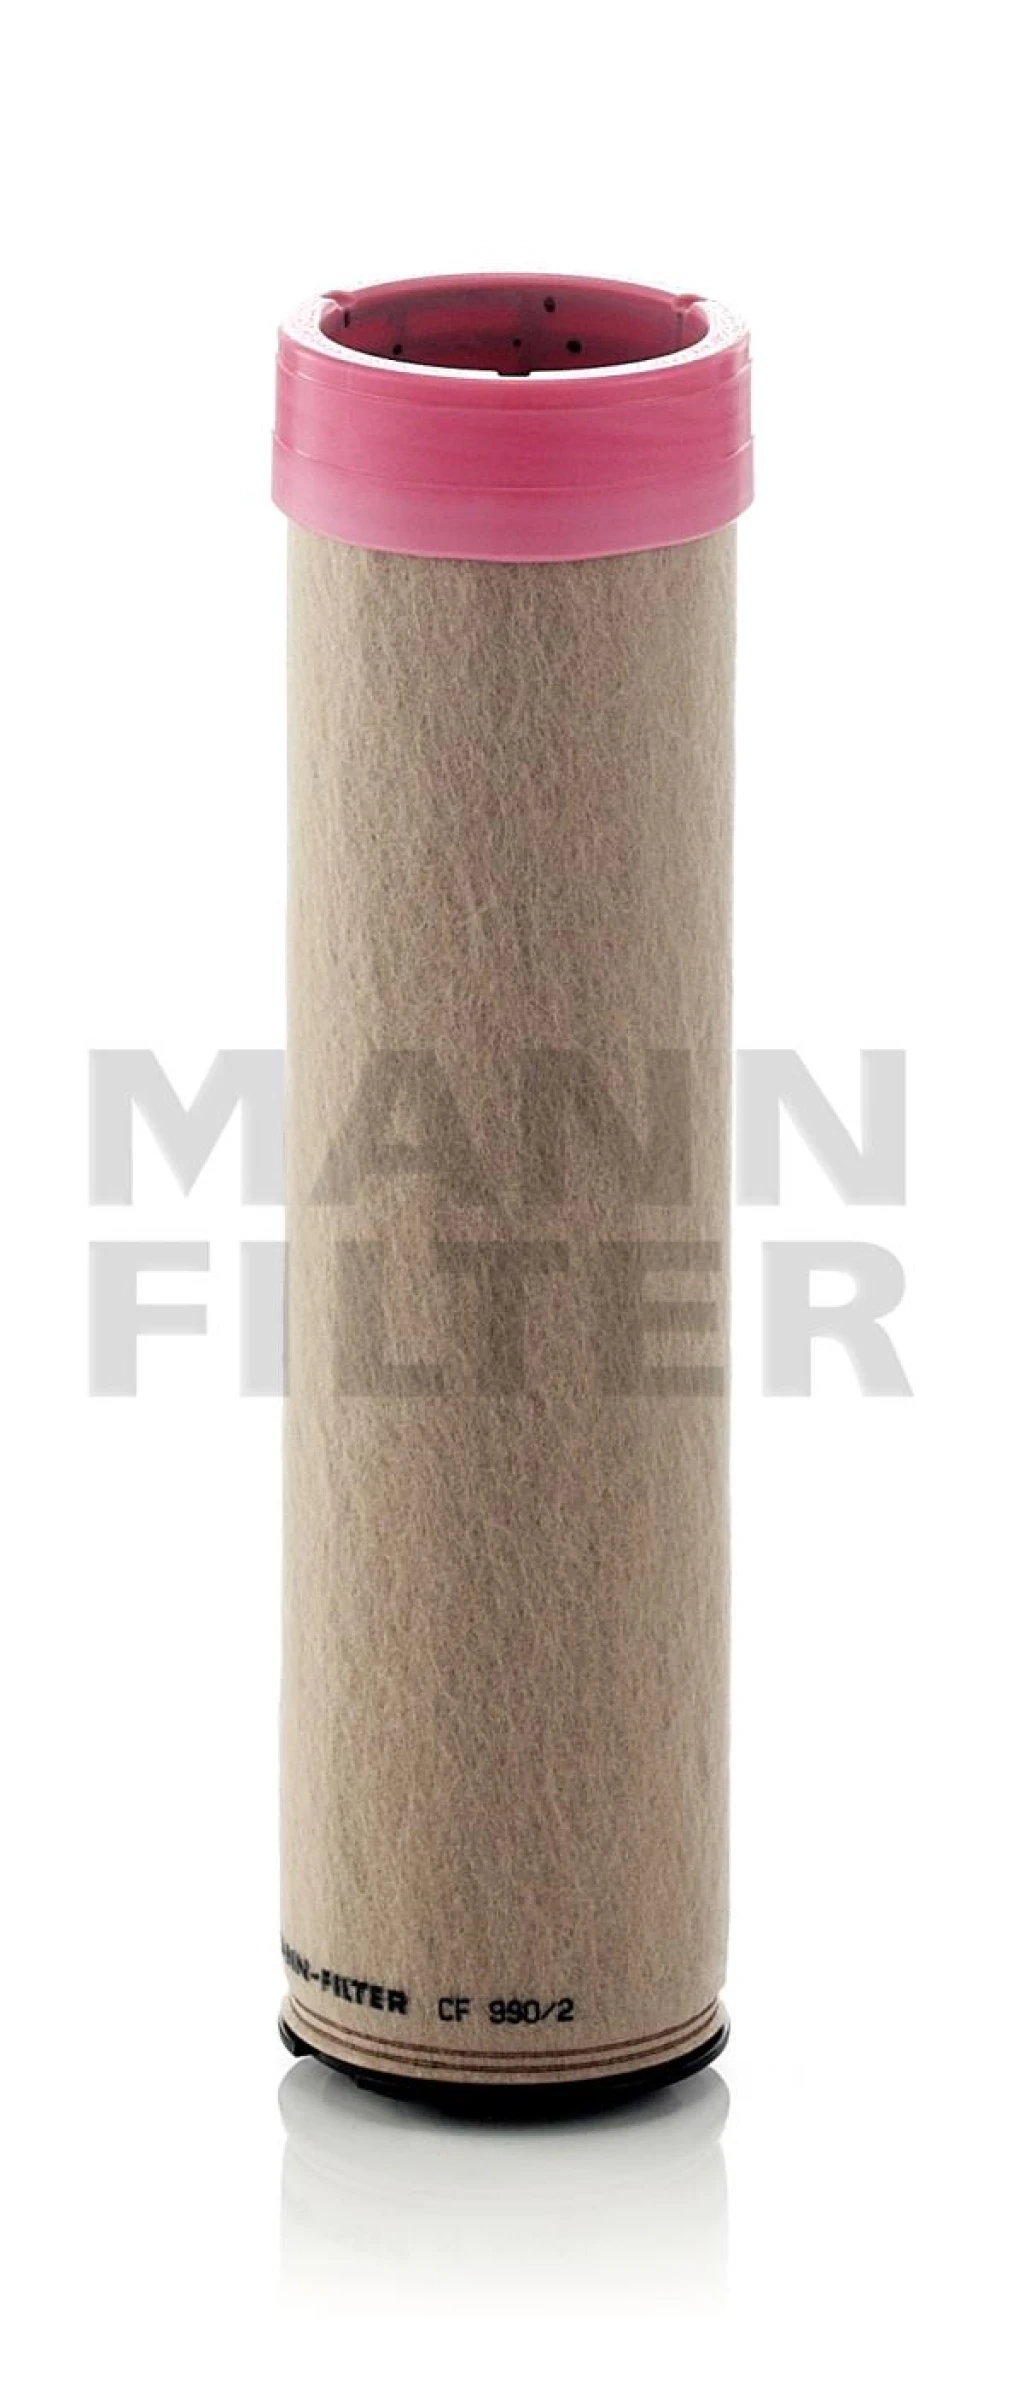 Фильтр добавочного воздуха MANN-FILTER CF990/2